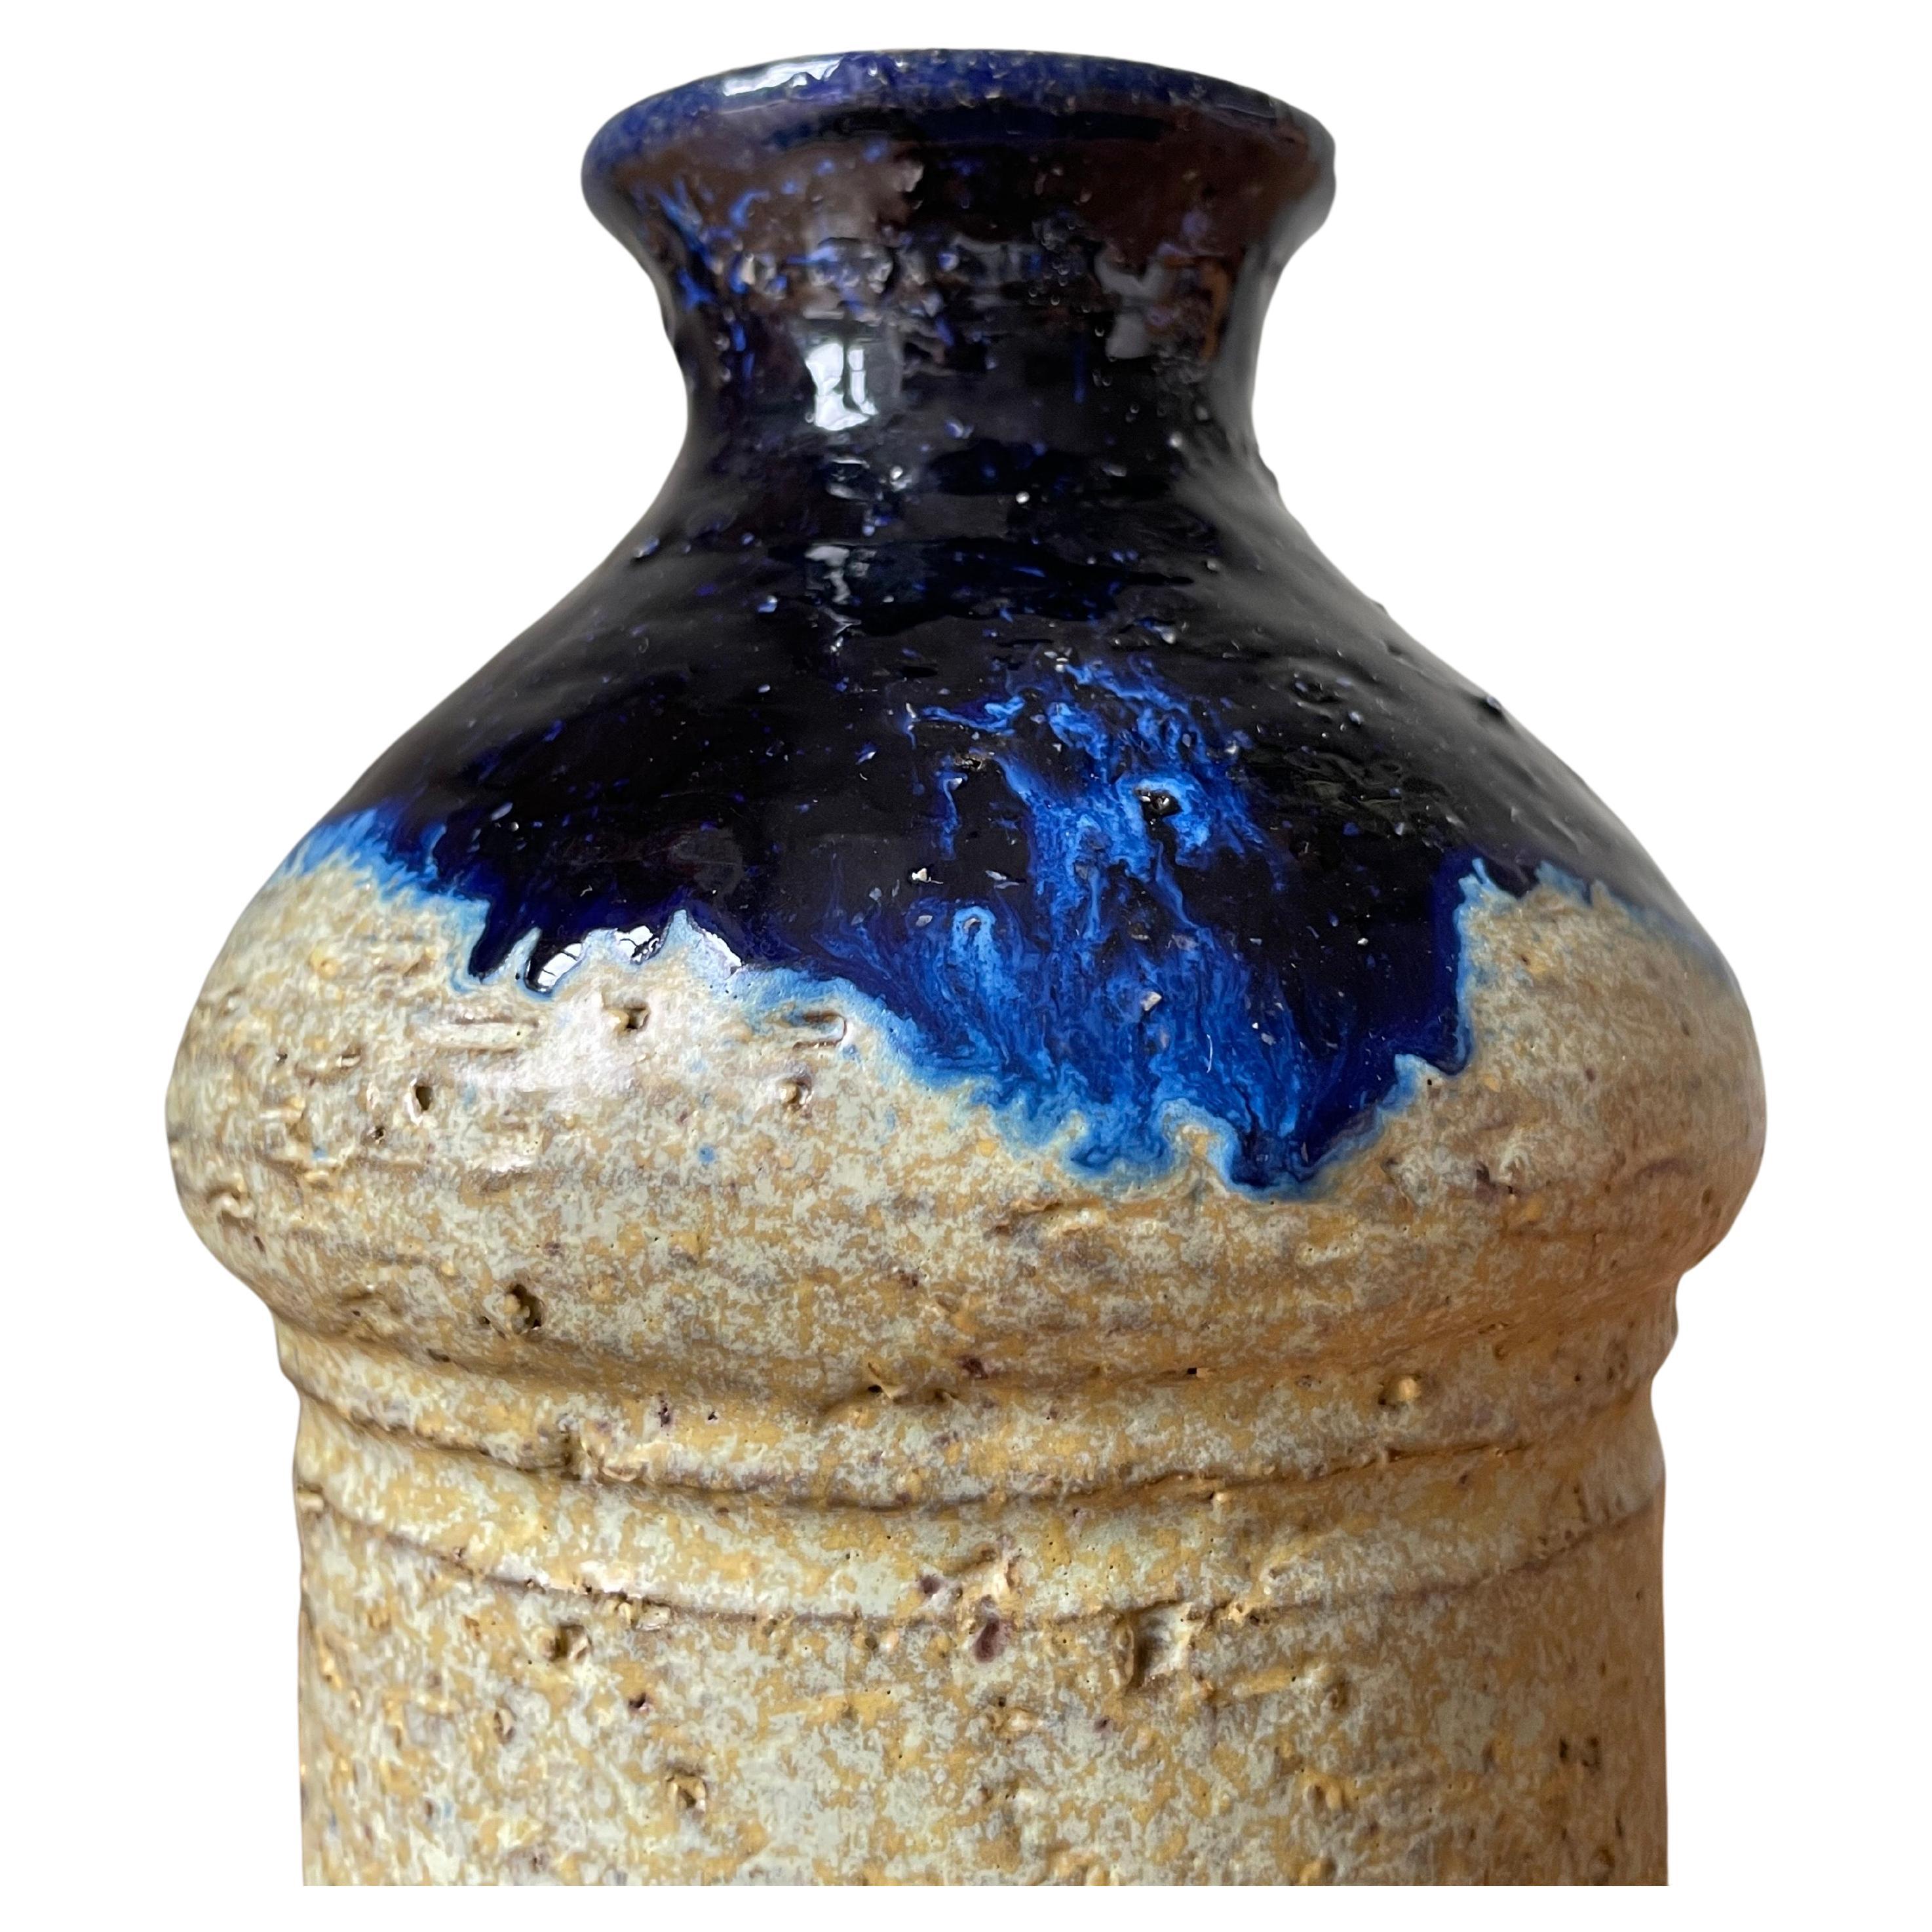 Gebogene rustikale Keramikvase mit sandfarbenem, zylinderförmigem Körper. Die abgerundete Oberseite ist mit einer glänzenden dunkelblauen Laufglasur versehen, während die Unterseite roh und unglasiert ist. Hergestellt in Dänemark in den 1960er